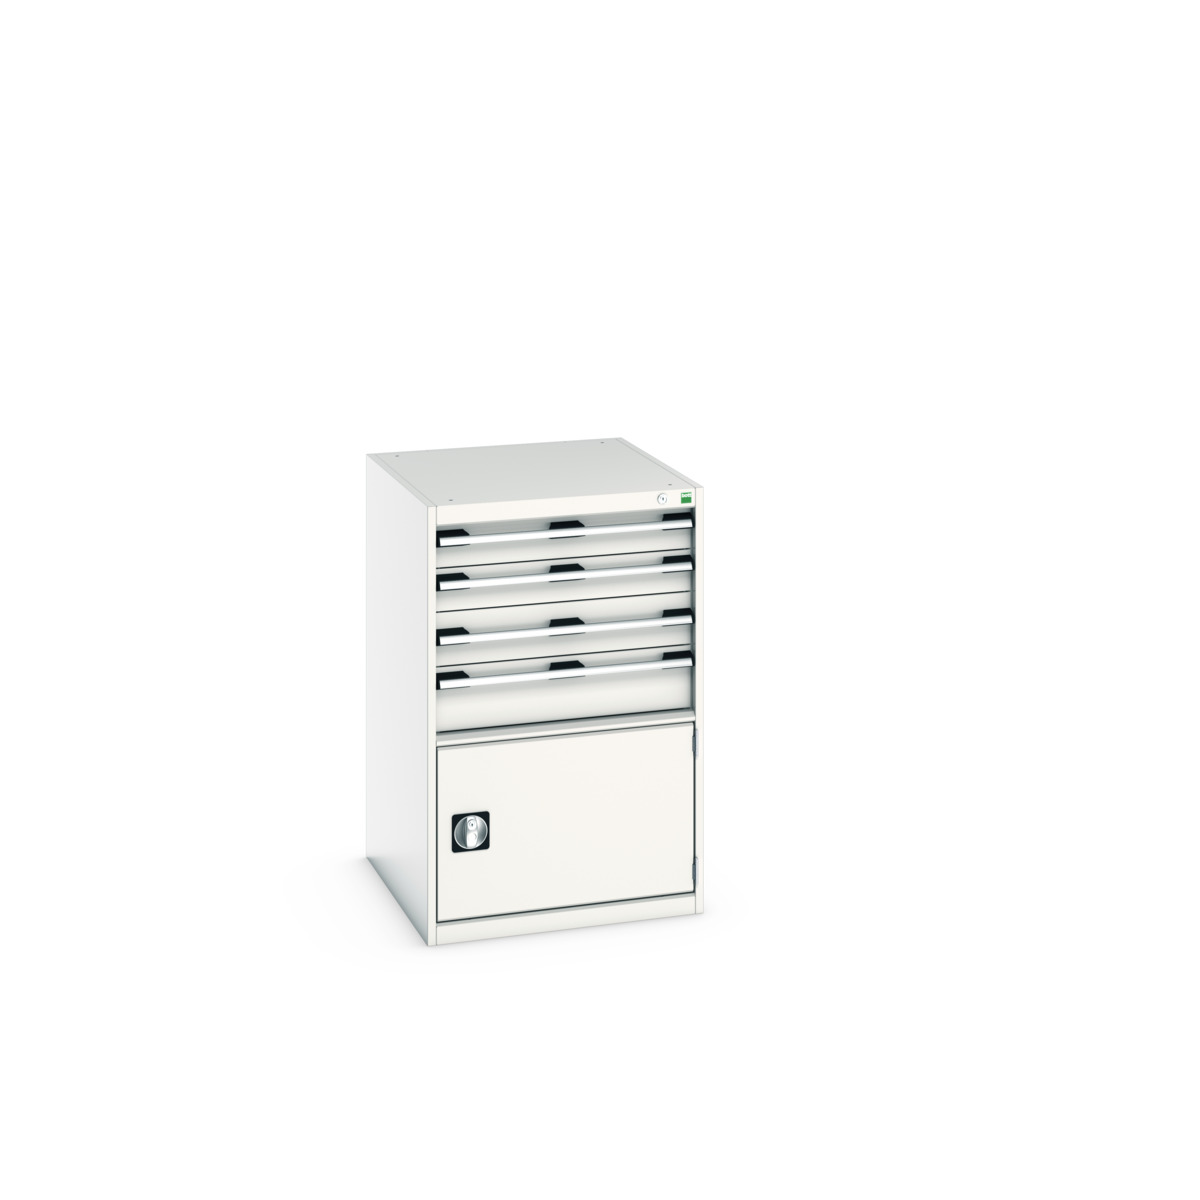 40027023.16V - cubio drawer-door cabinet